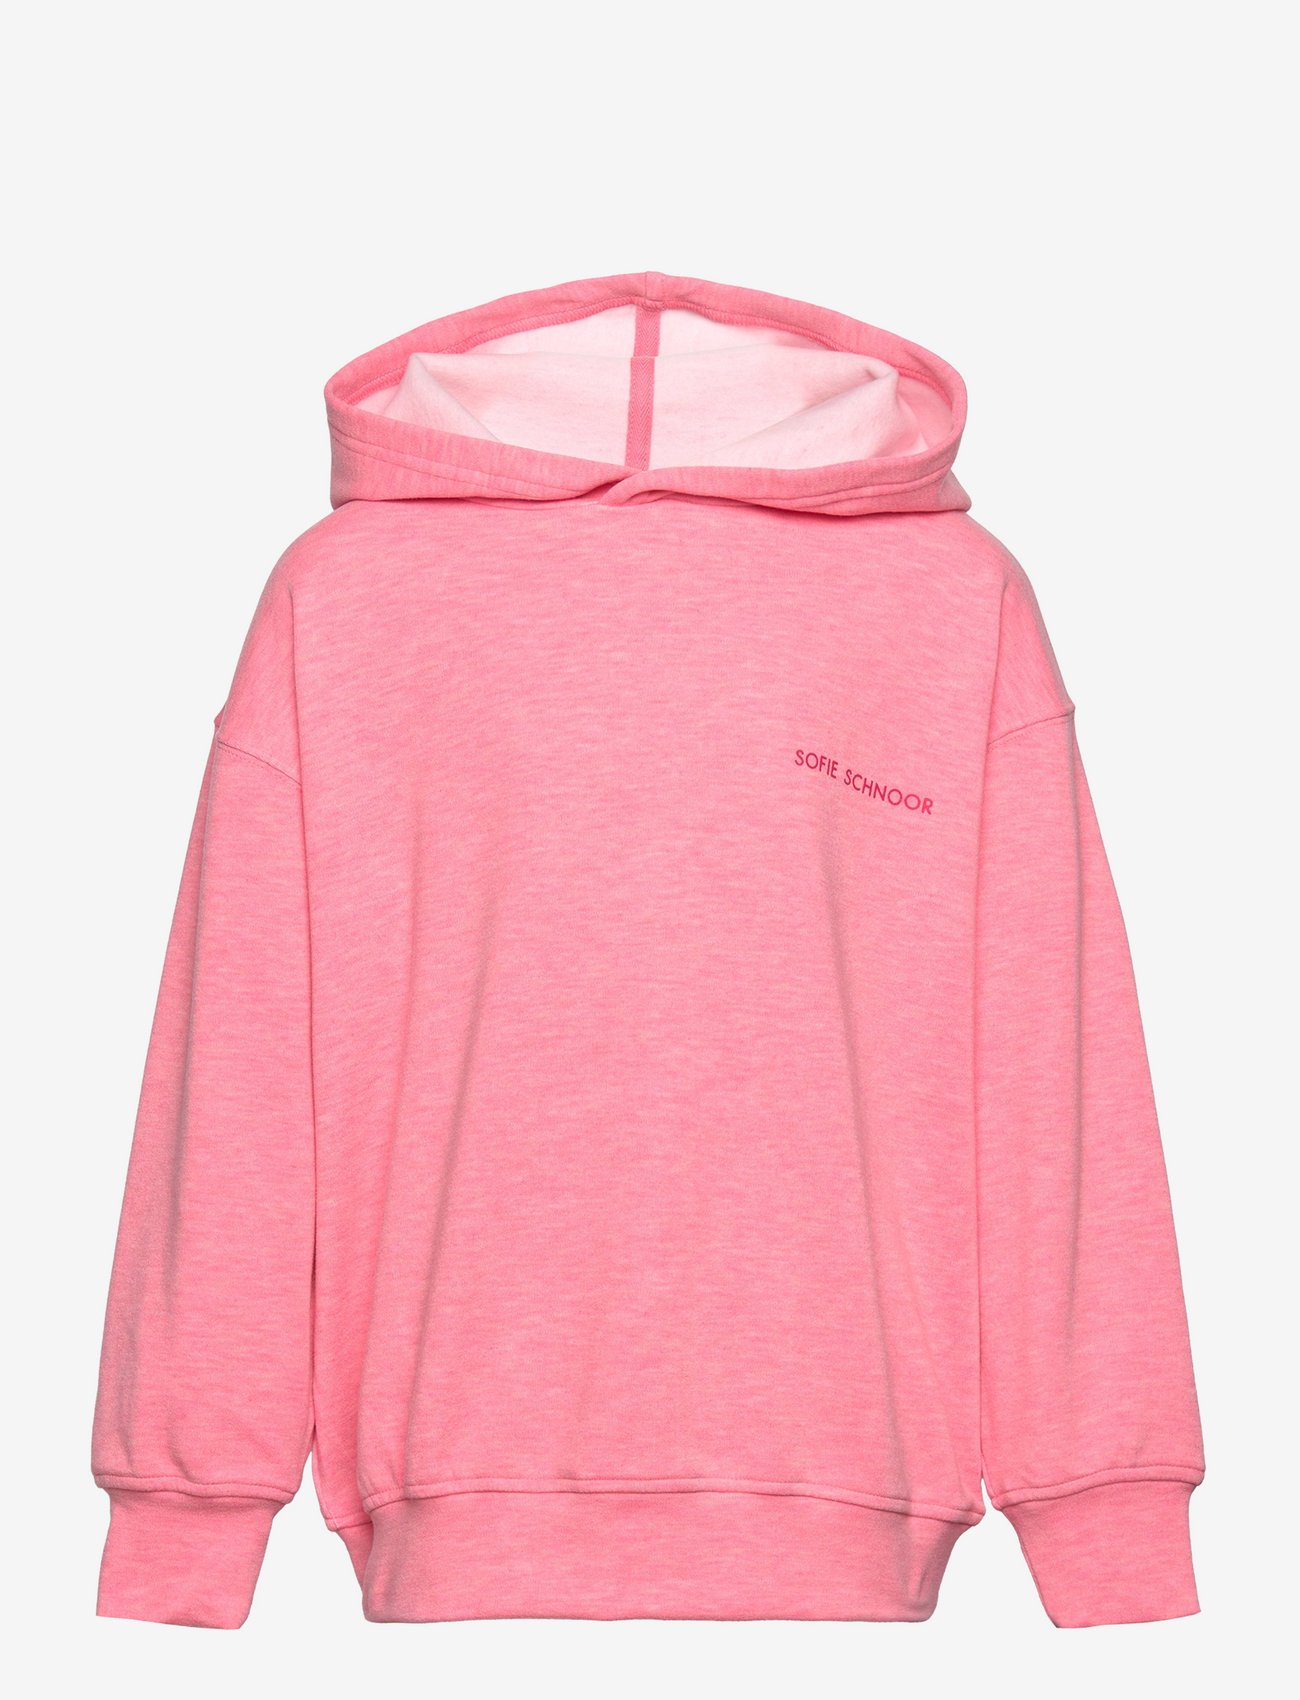 Sofie Schnoor Young - Sweatshirt - kapuzenpullover - l pink - 0